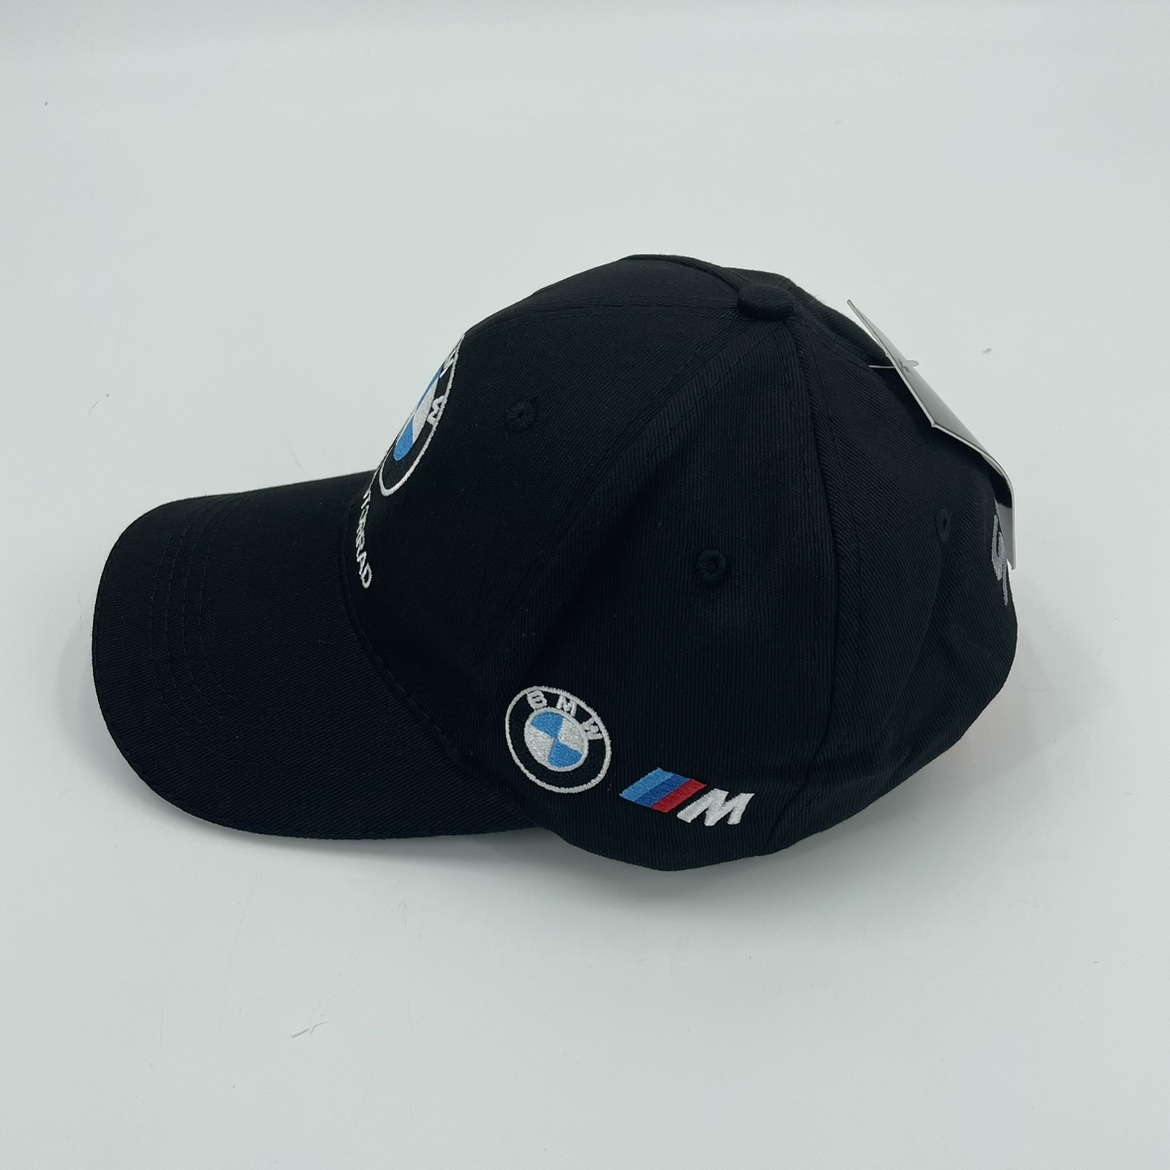 宝马机车赛事WSBK休闲鸭舌帽SMR车队 摩托车BMW刺绣棒球帽M系定制